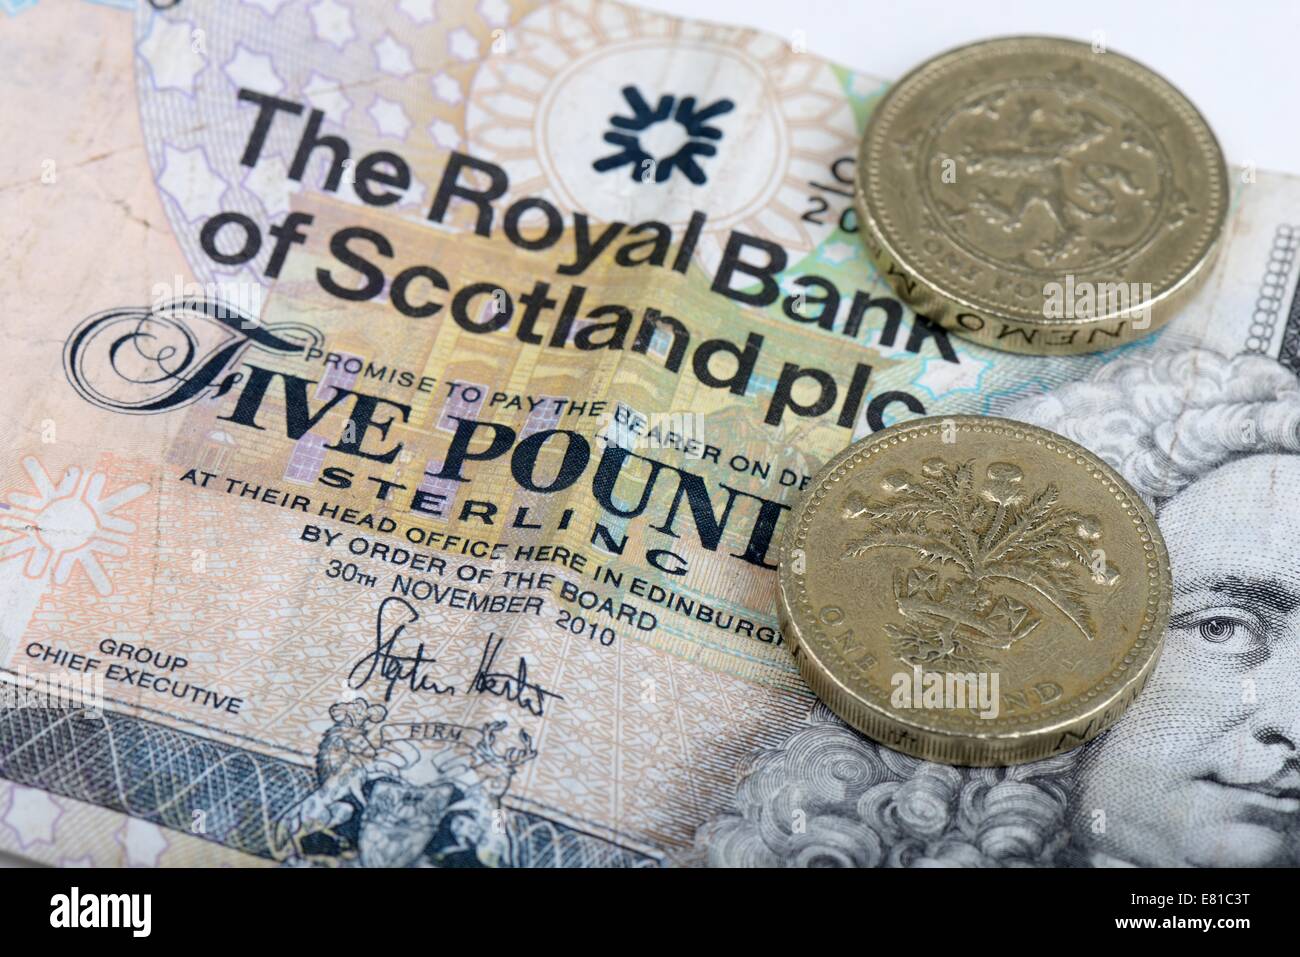 Eine Royal Bank of Scotland fünf Pfund Note und zwei Pfund Münzen mit schottischen Motiven machen insgesamt sieben Pfund Sterling. Stockfoto